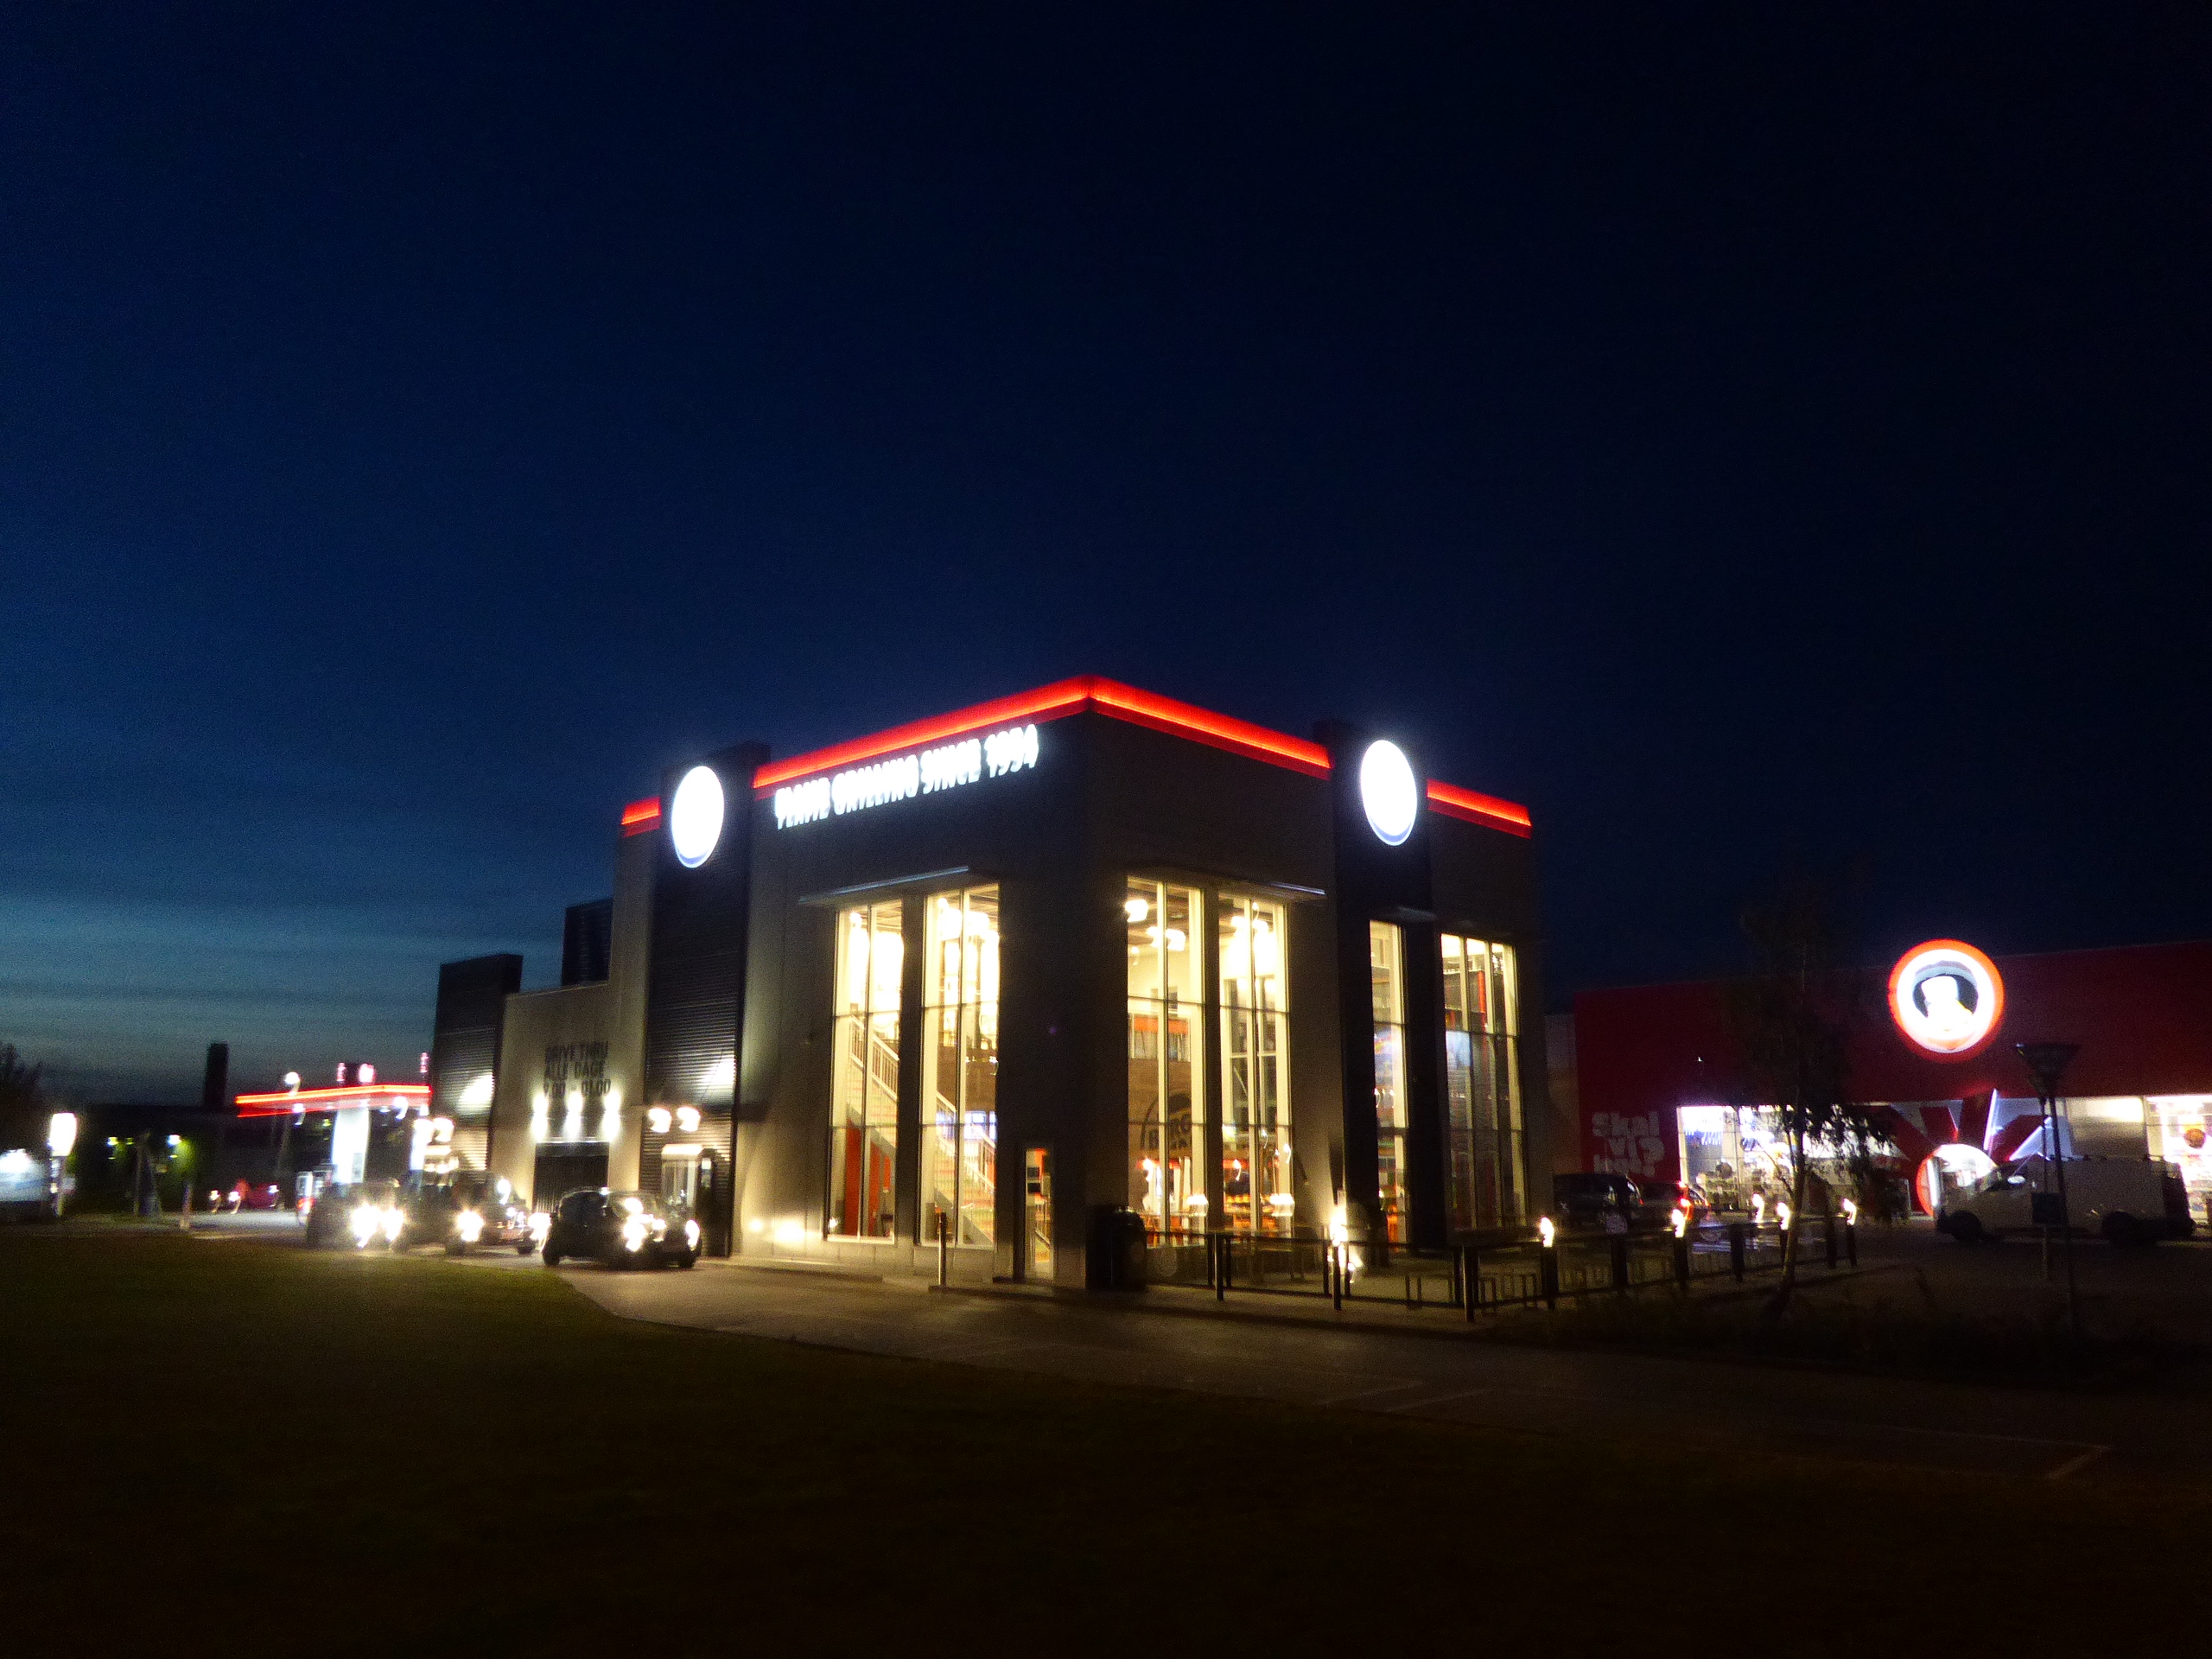 Kalkun Det er billigt Kan ikke File:Burger King, Jyllingevej at night.jpg - Wikimedia Commons